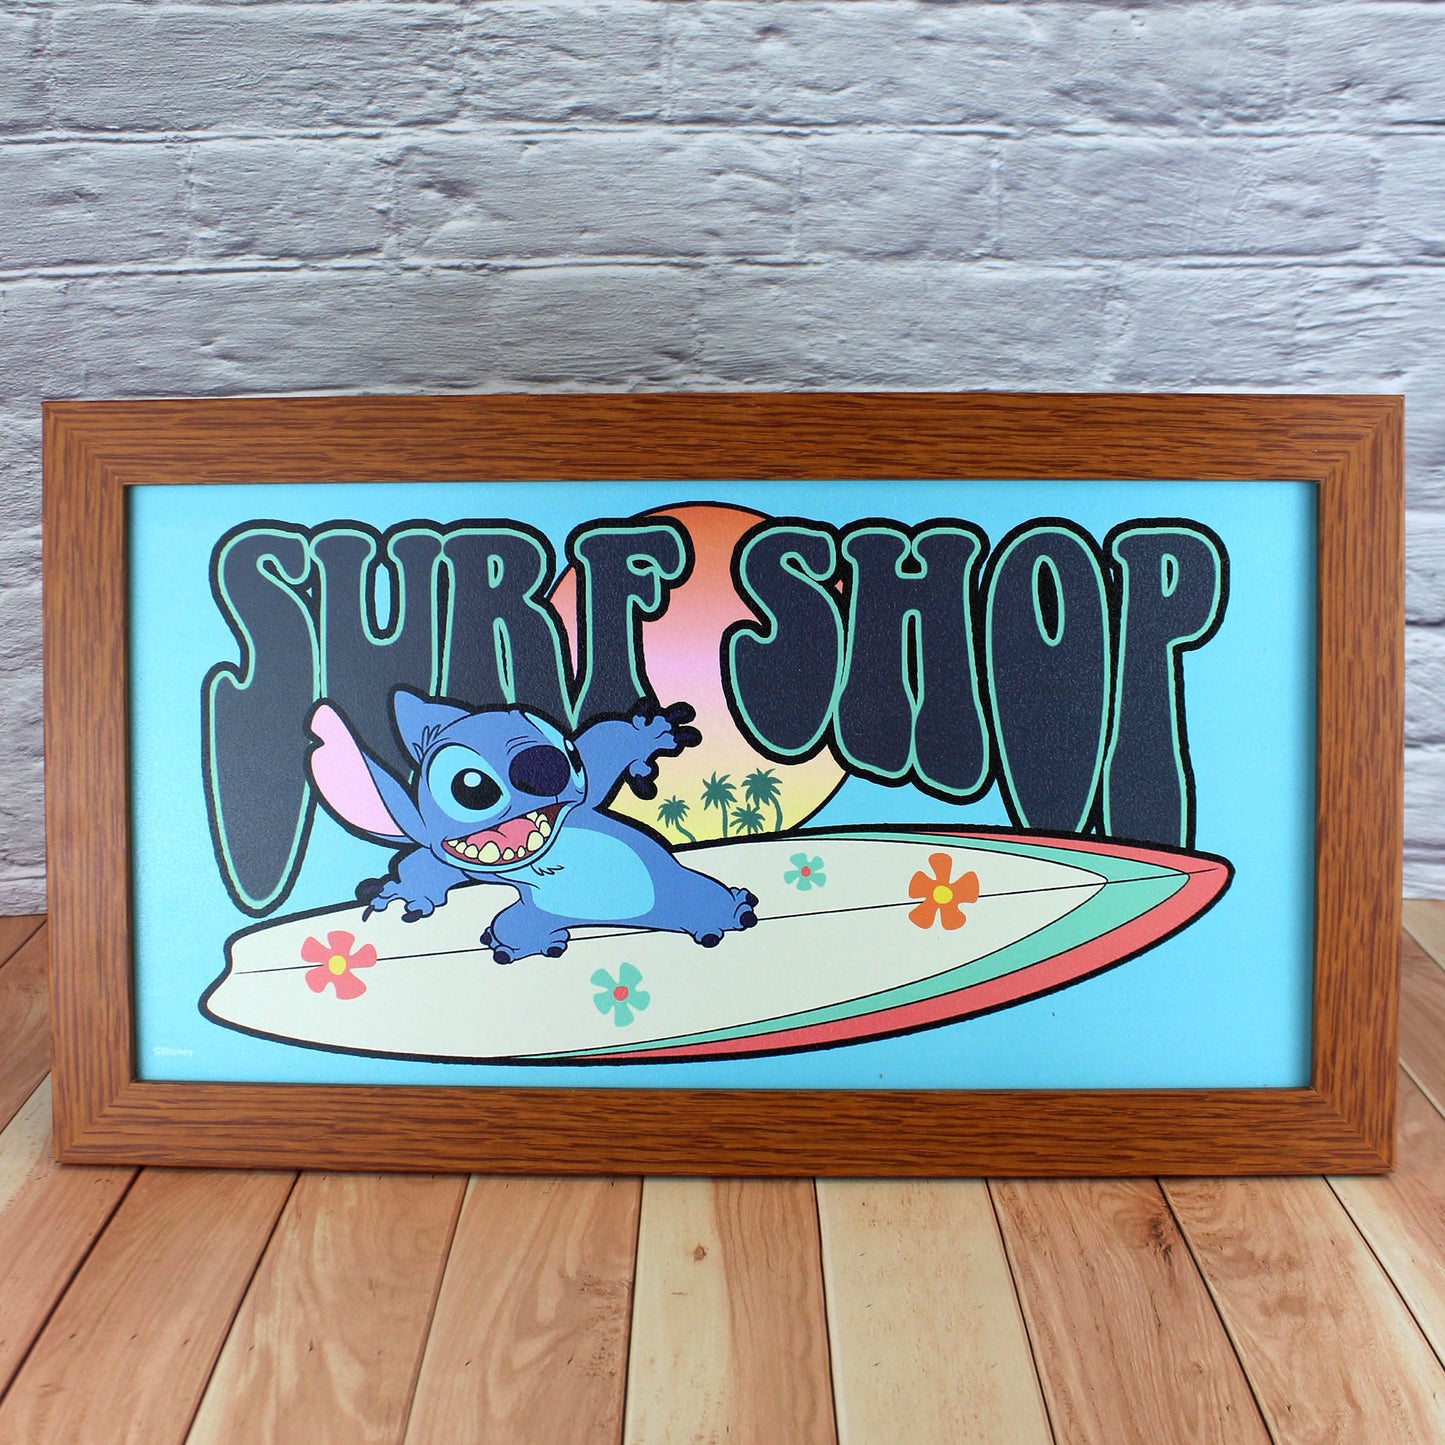 Surf Shop (Lilo & Stitch) Disney Framed Wall Sign